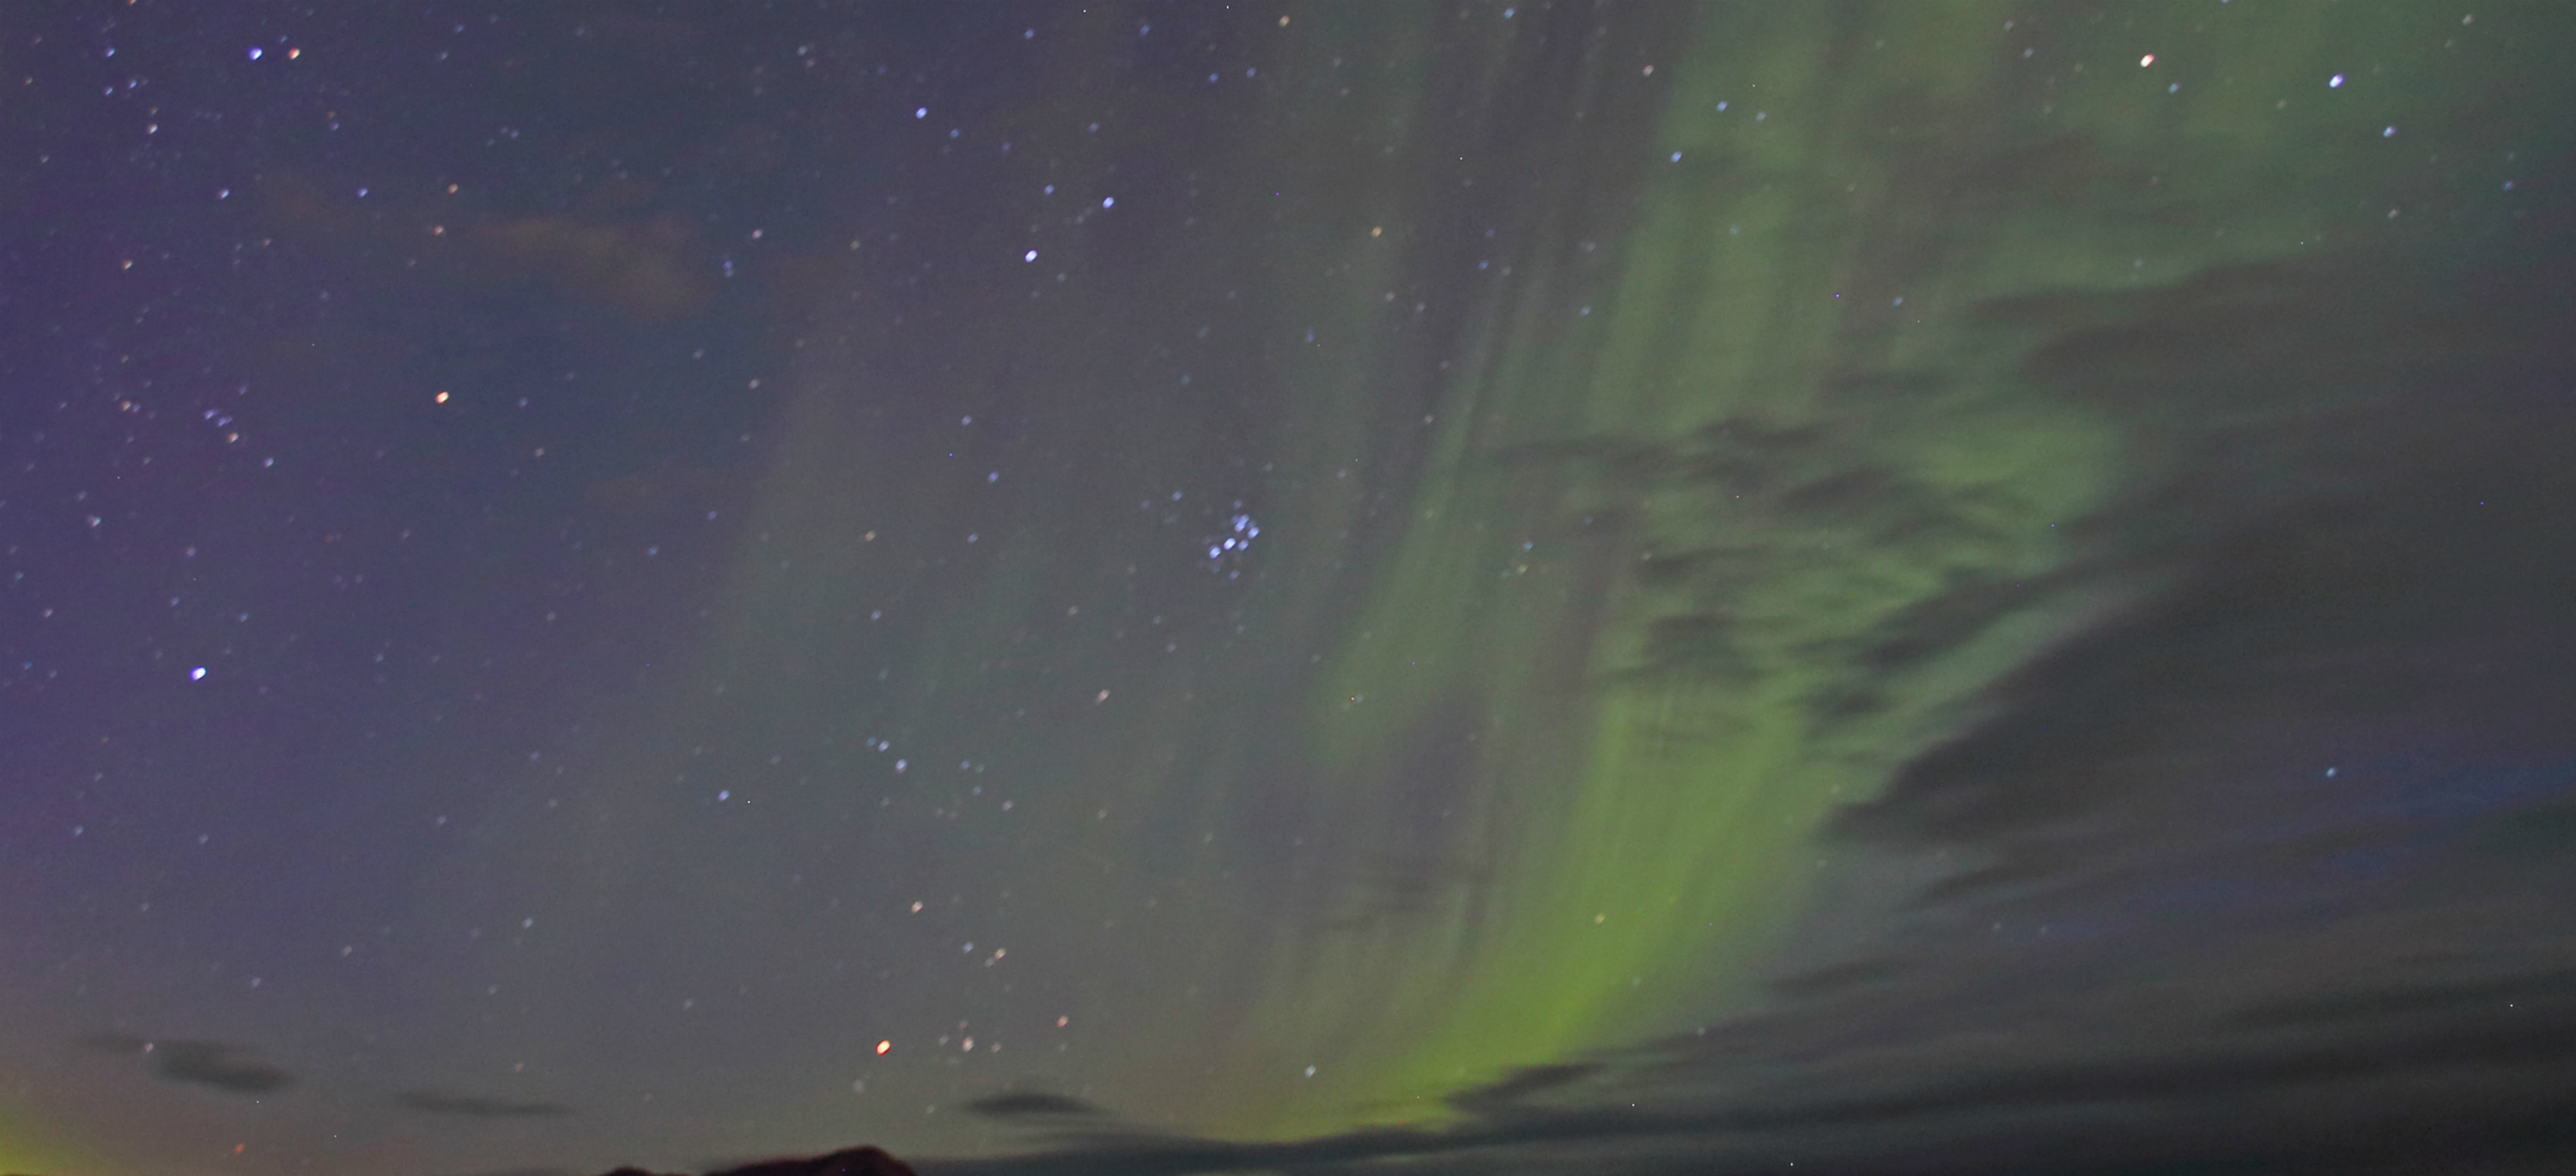 Consejo, la mejor forma de ver una aurora boreal, es aprovechar la máxima oscuridad en lugares donde el cielo esté claro y despejado. Foto: Diego Sobrino